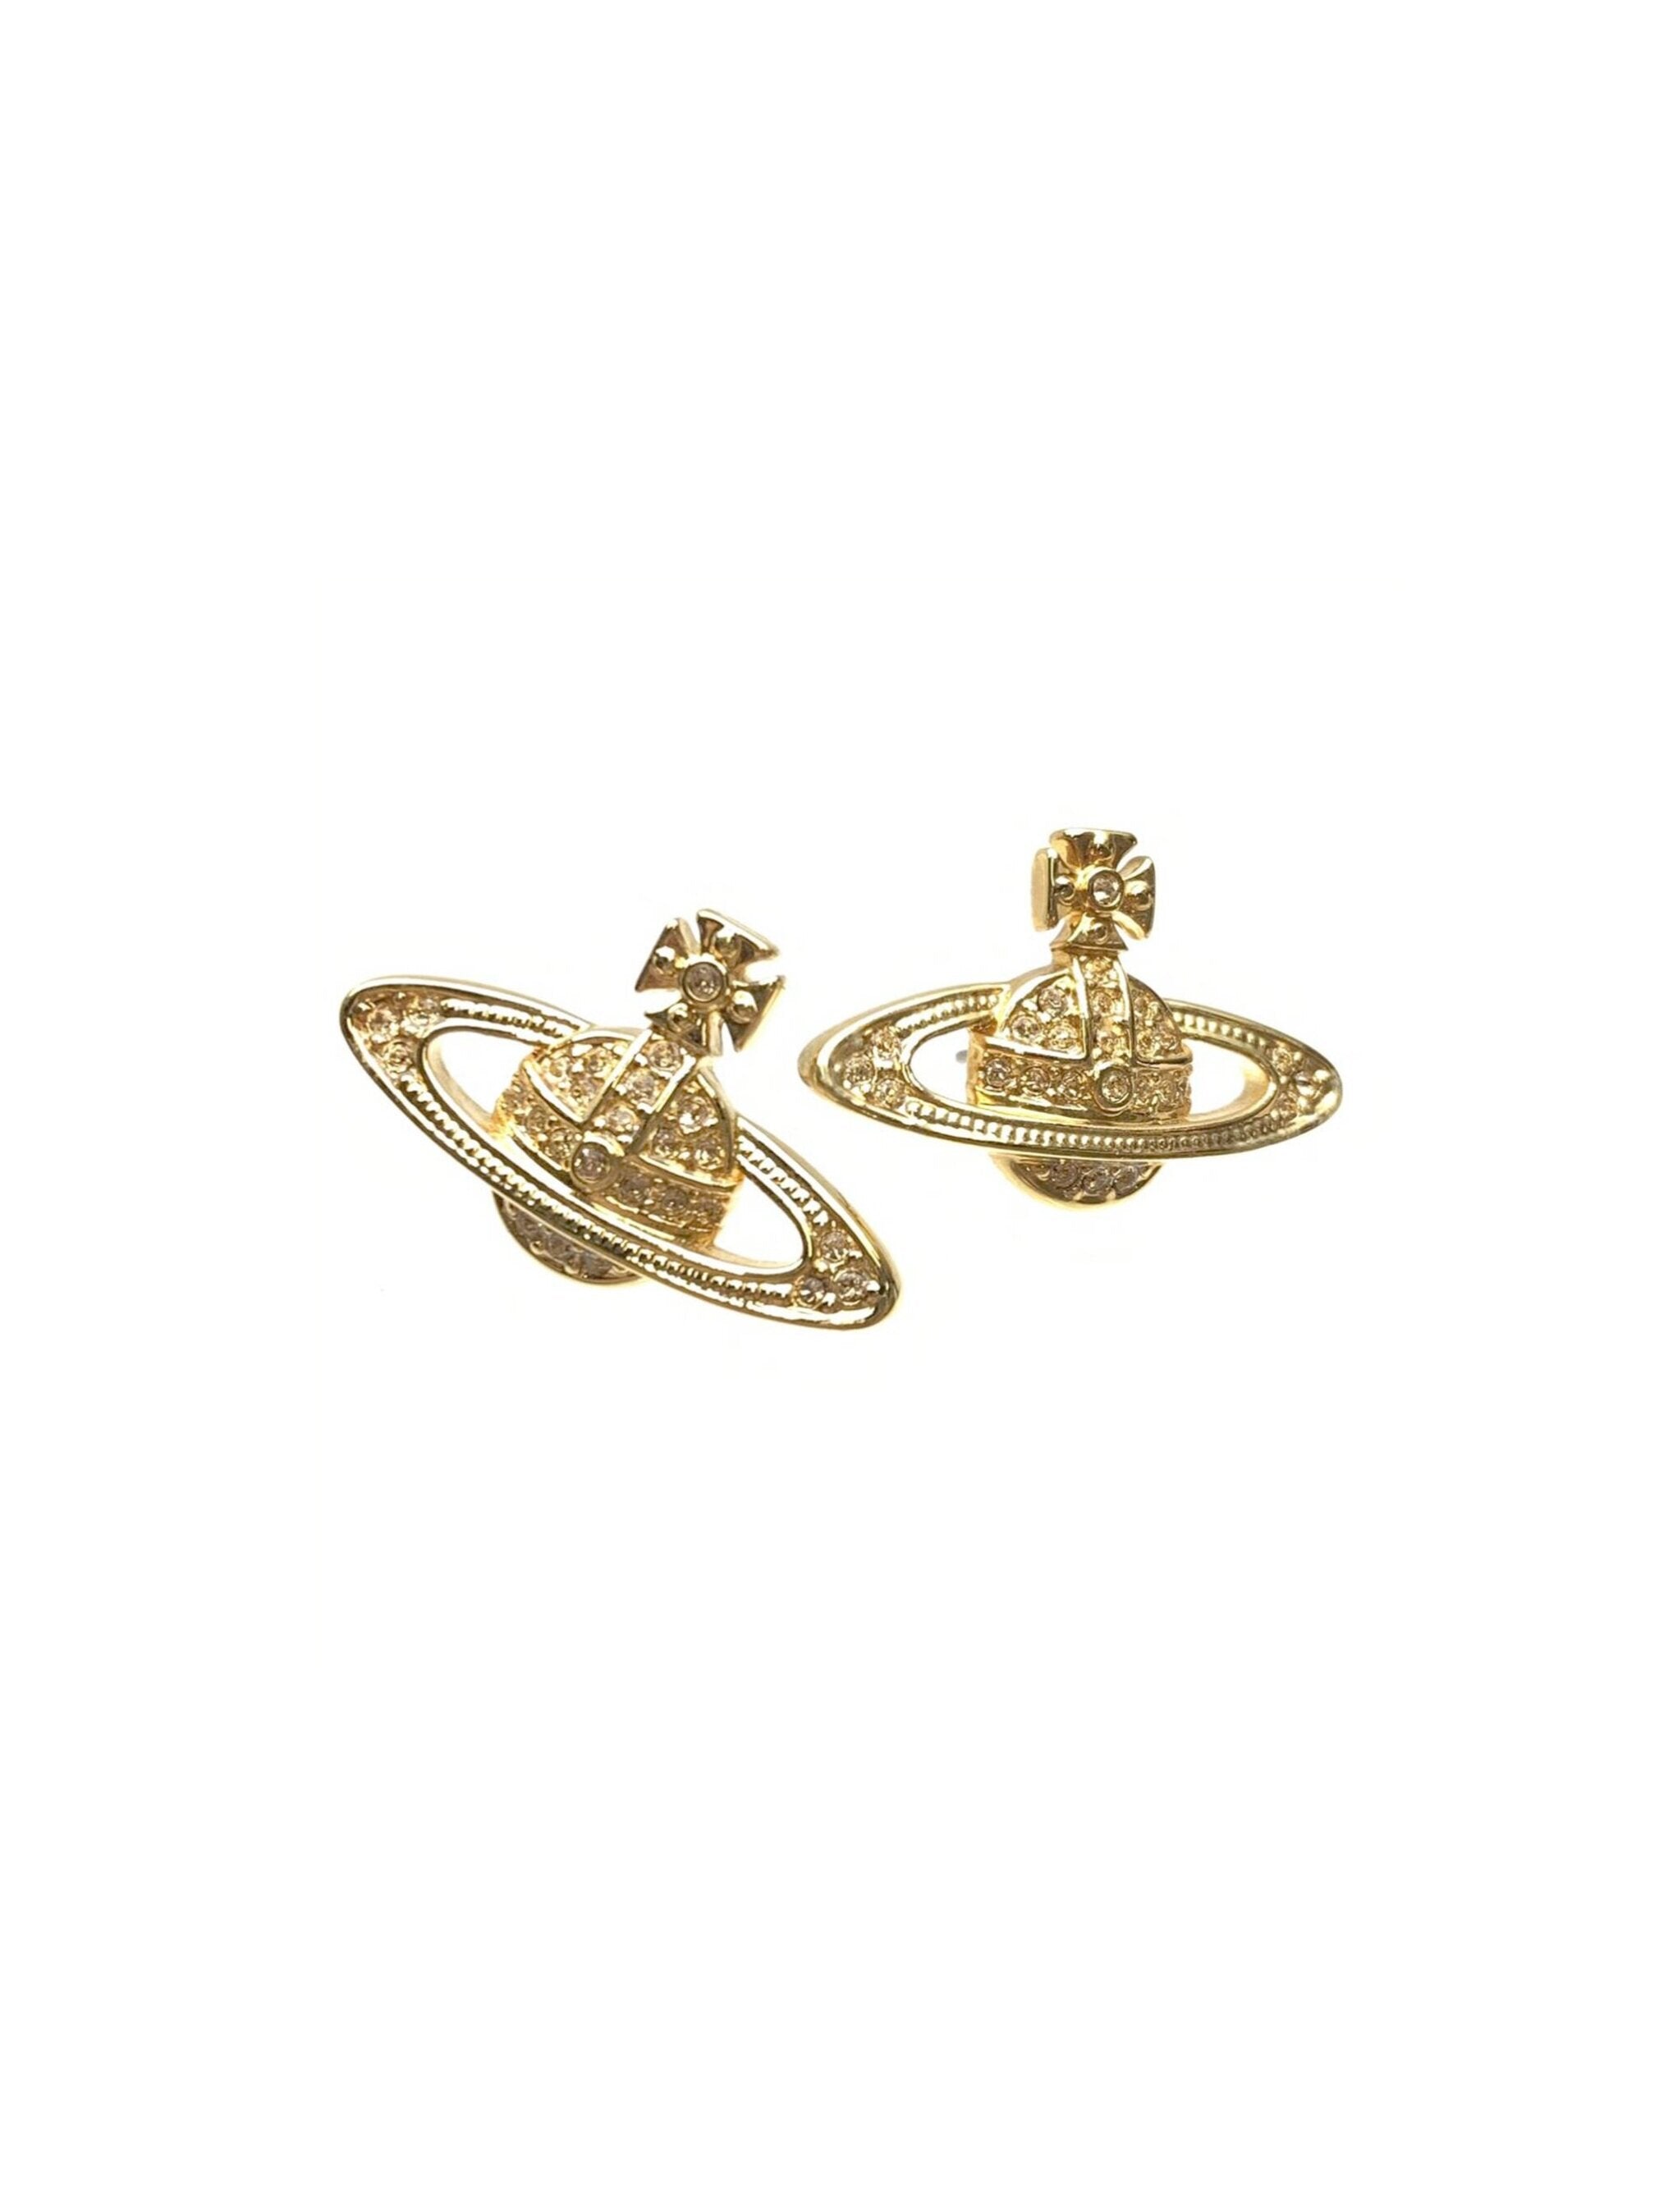 Vivienne Westwood 2000s Gold Orb Earrings